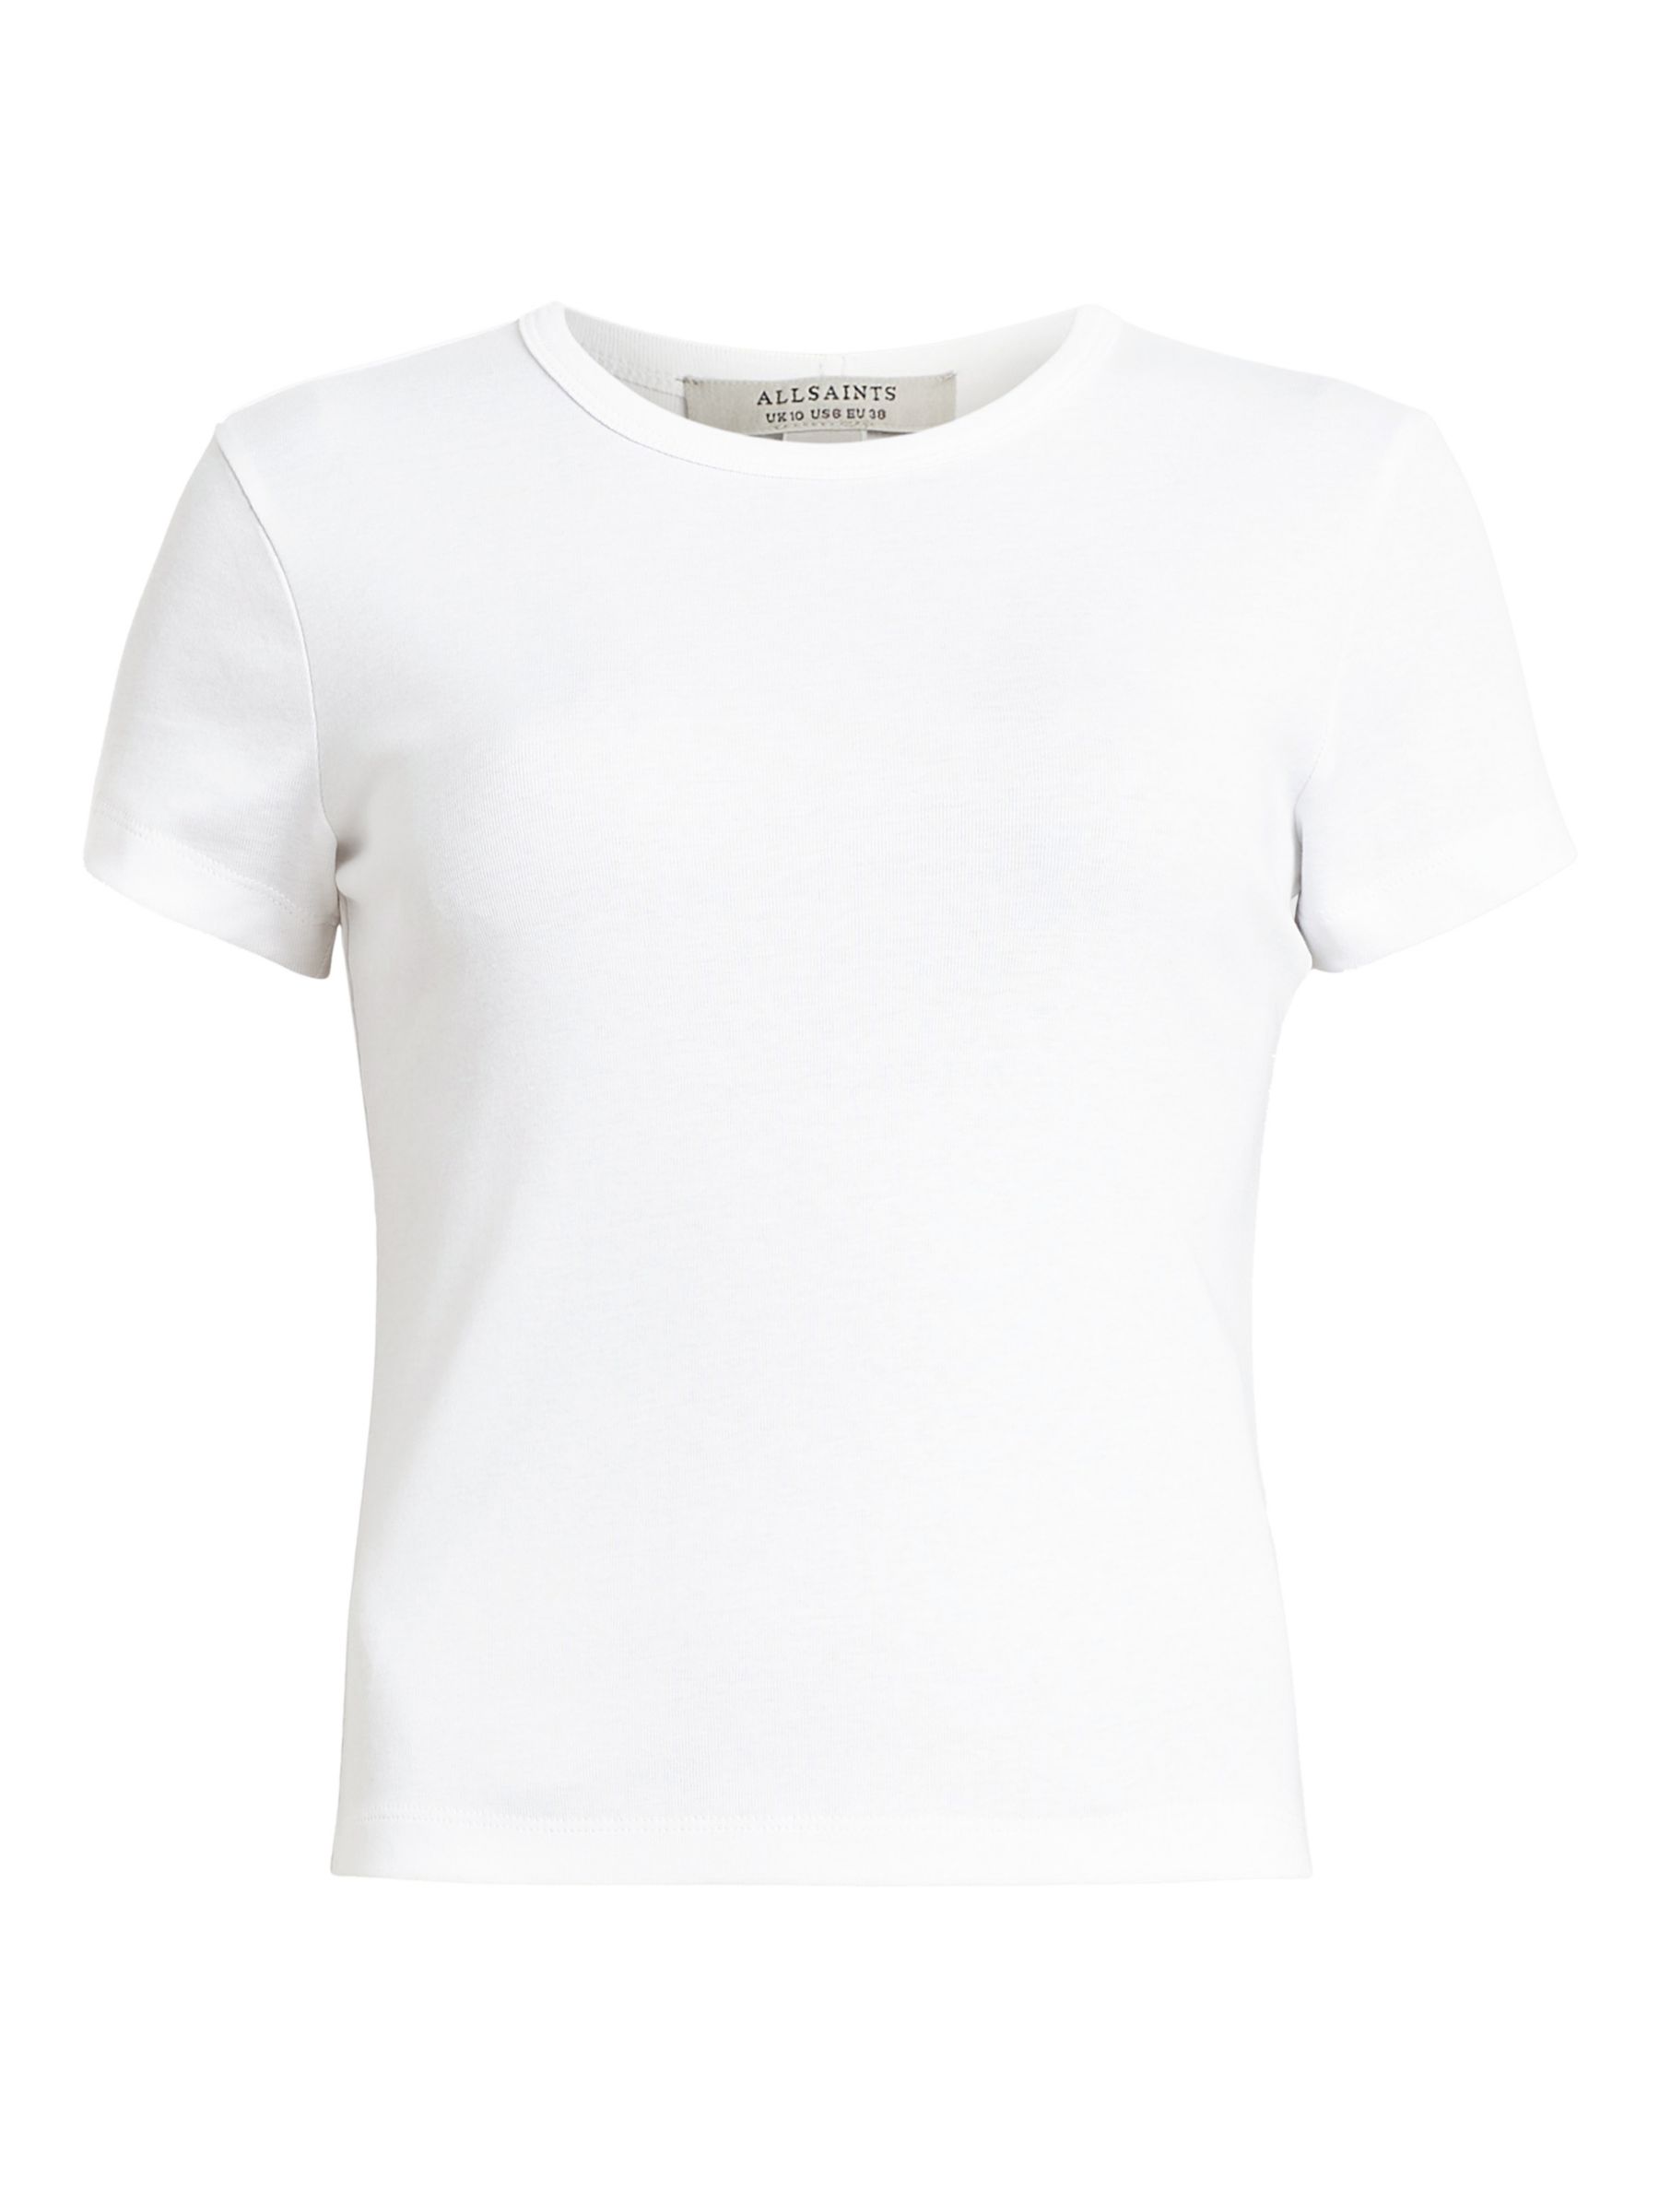 Buy AllSaints Stevie Organic Cotton T-Shirt Online at johnlewis.com